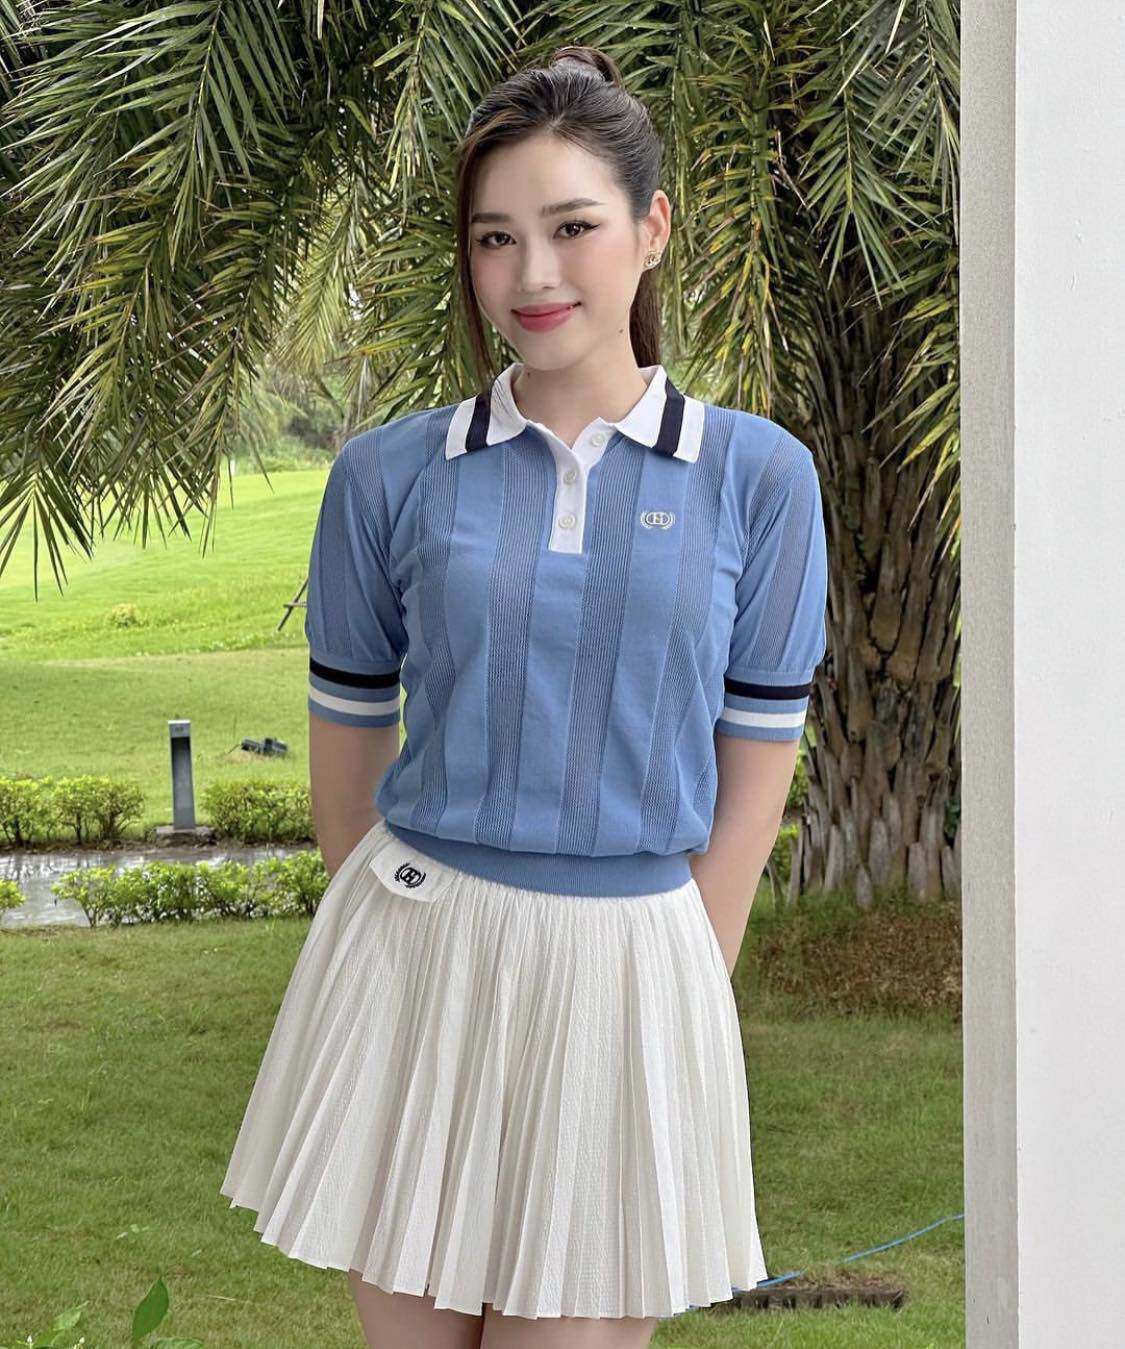 Mới chơi môn "nhà giàu", Đỗ Hà diện váy siêu ngắn khoe chân “đẹp nhất Việt Nam”